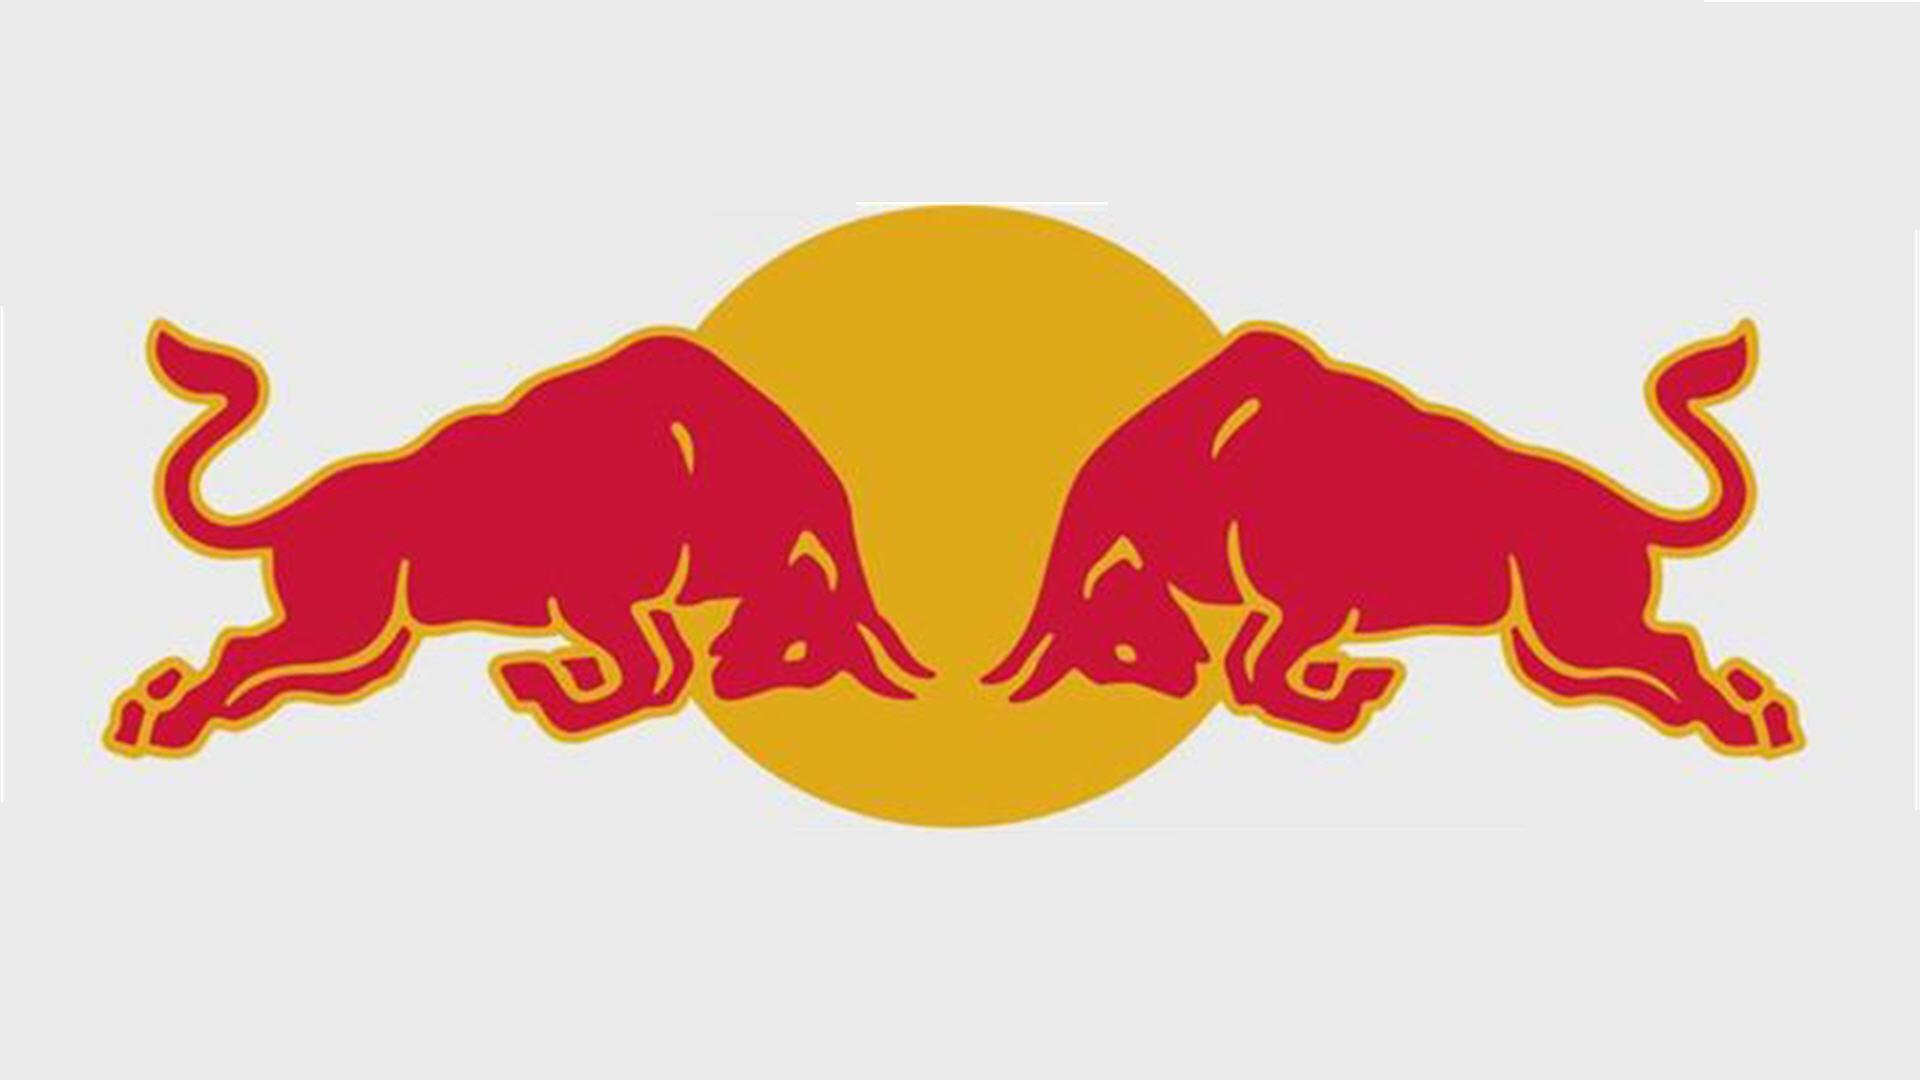 Bul Logo - Red Bull Logo Wallpaper